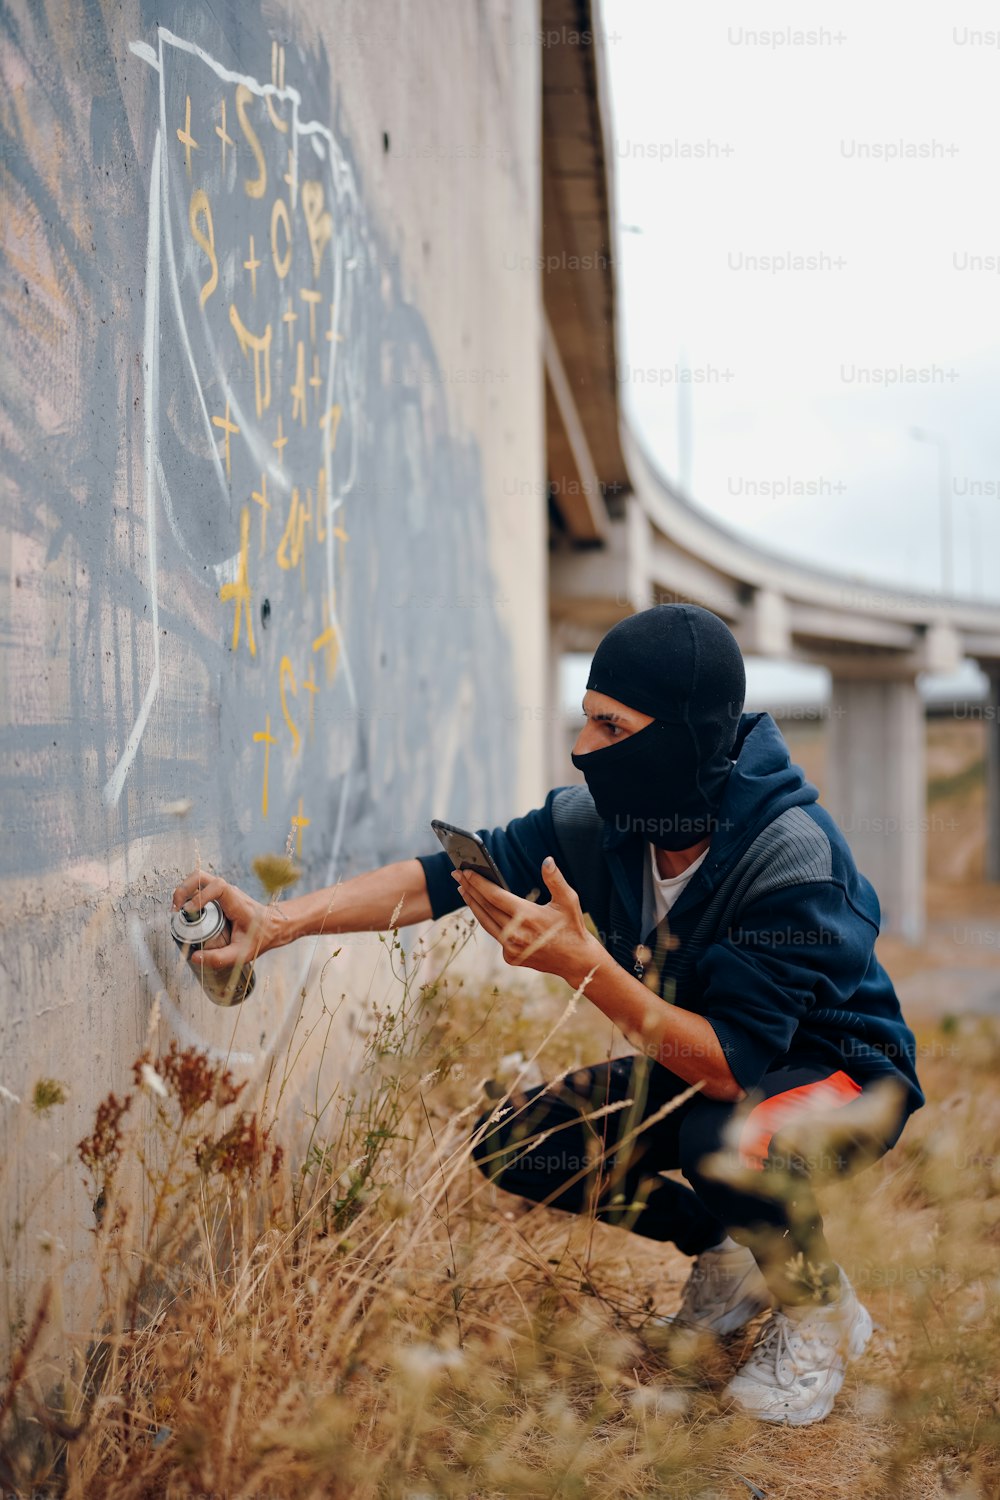 Un uomo con una maschera è appoggiato a un muro